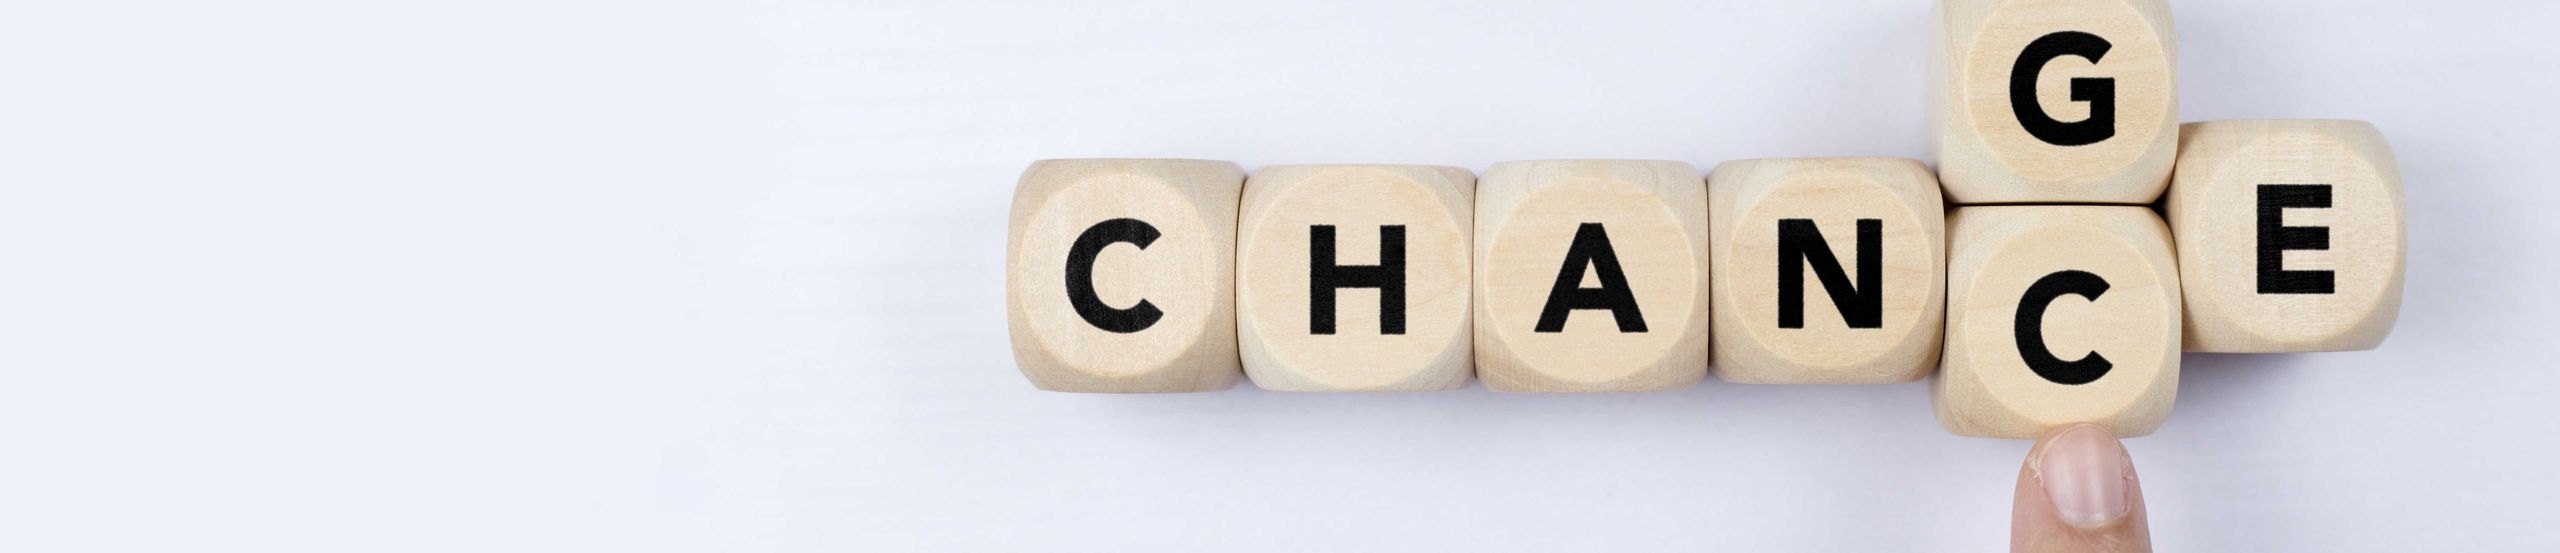 Mehrere Buchstabenwürfel, die zusammen das Wort Change ergeben. Ein Finger schiebt von unten ein C an die Stelle des G, sodass aus Change das Wort Chance wird.